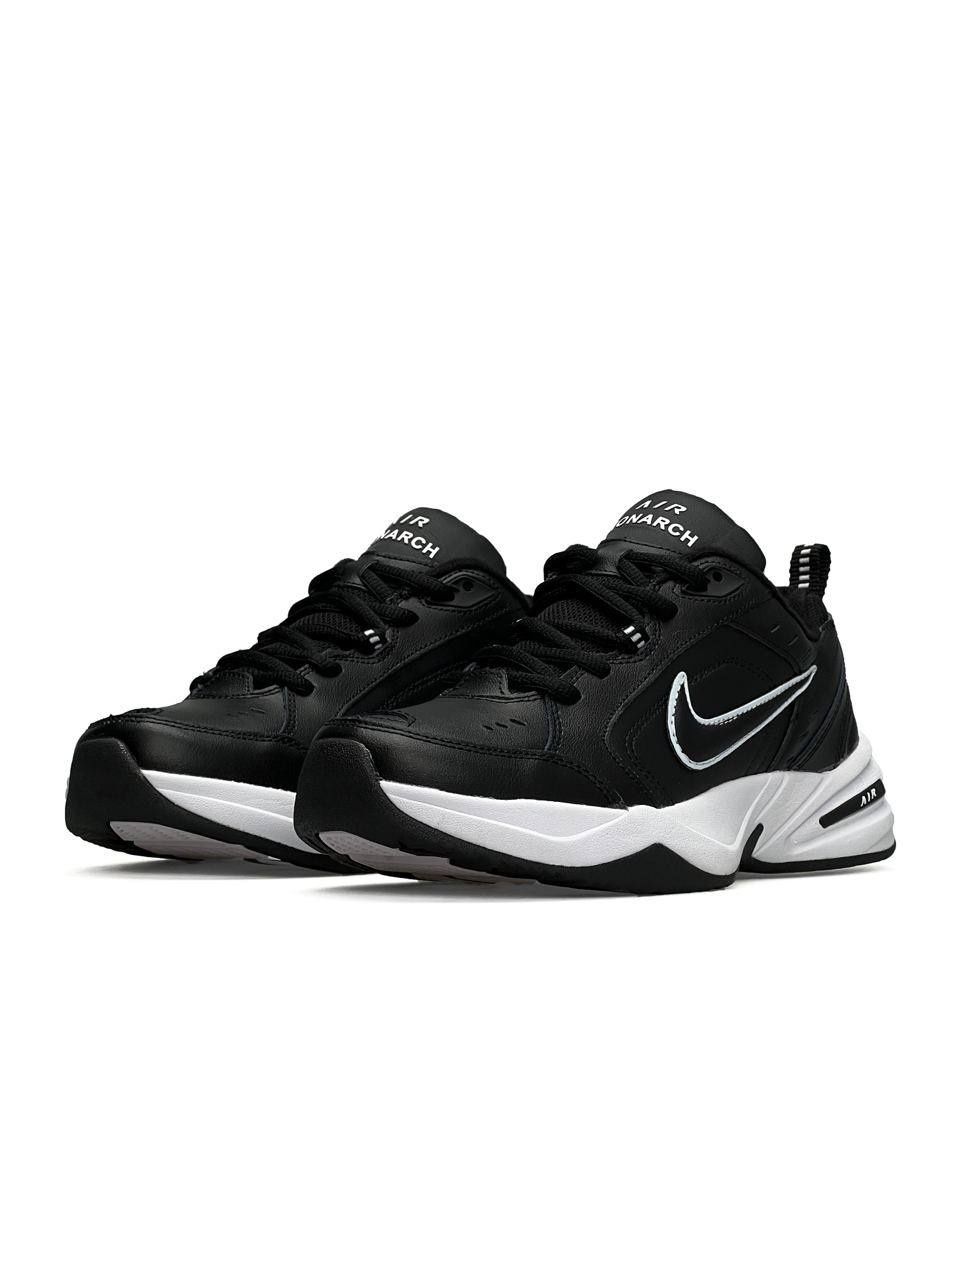 Кросівки Nike Air Monarch 4 black white | Кроссовки найк білі чорні